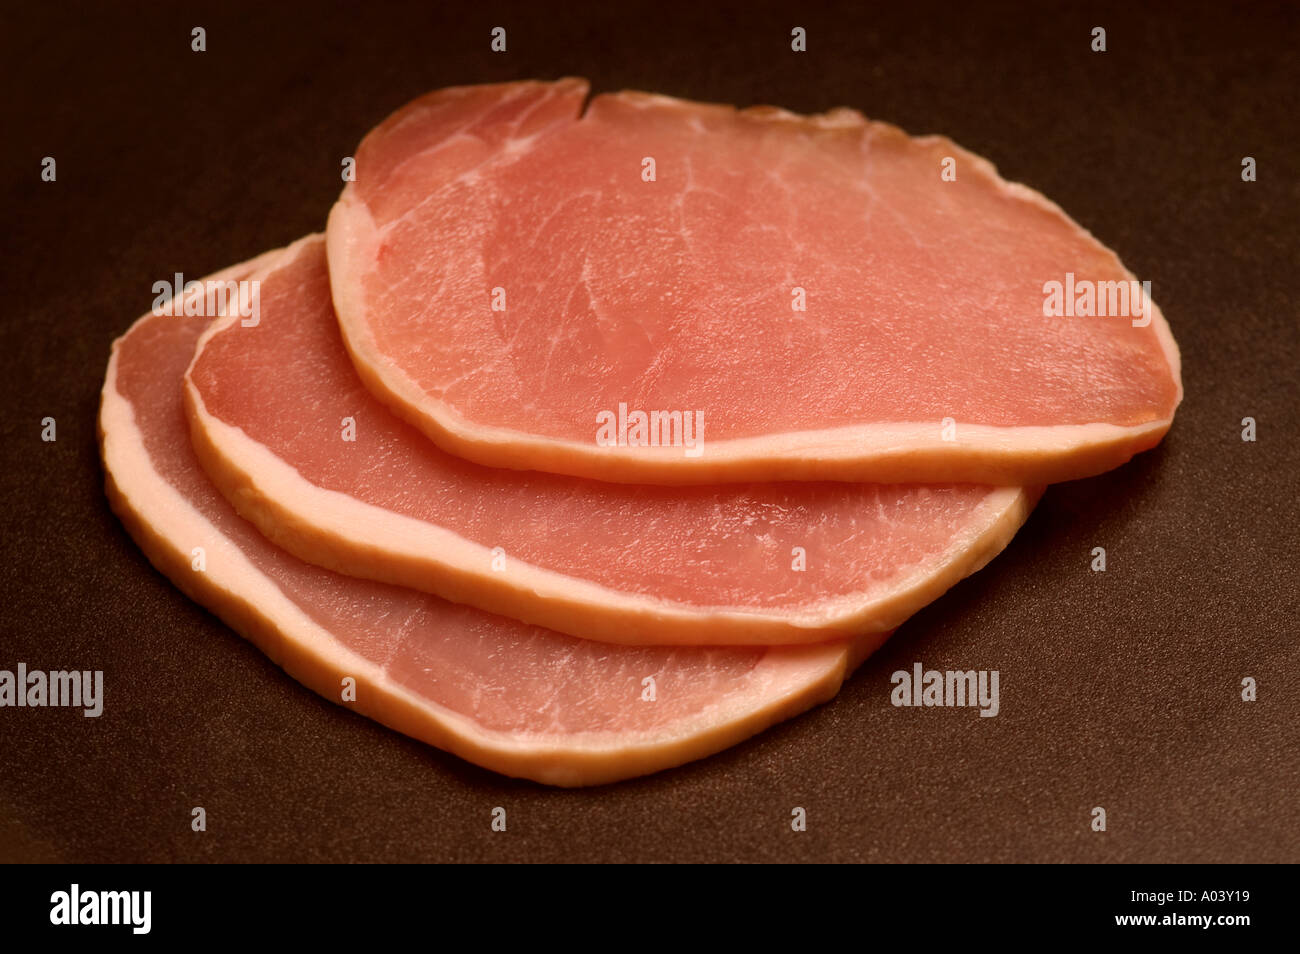 3 bistecche di carne arrosto di manzo esperimento di cucinare la carne cruda Foto Stock